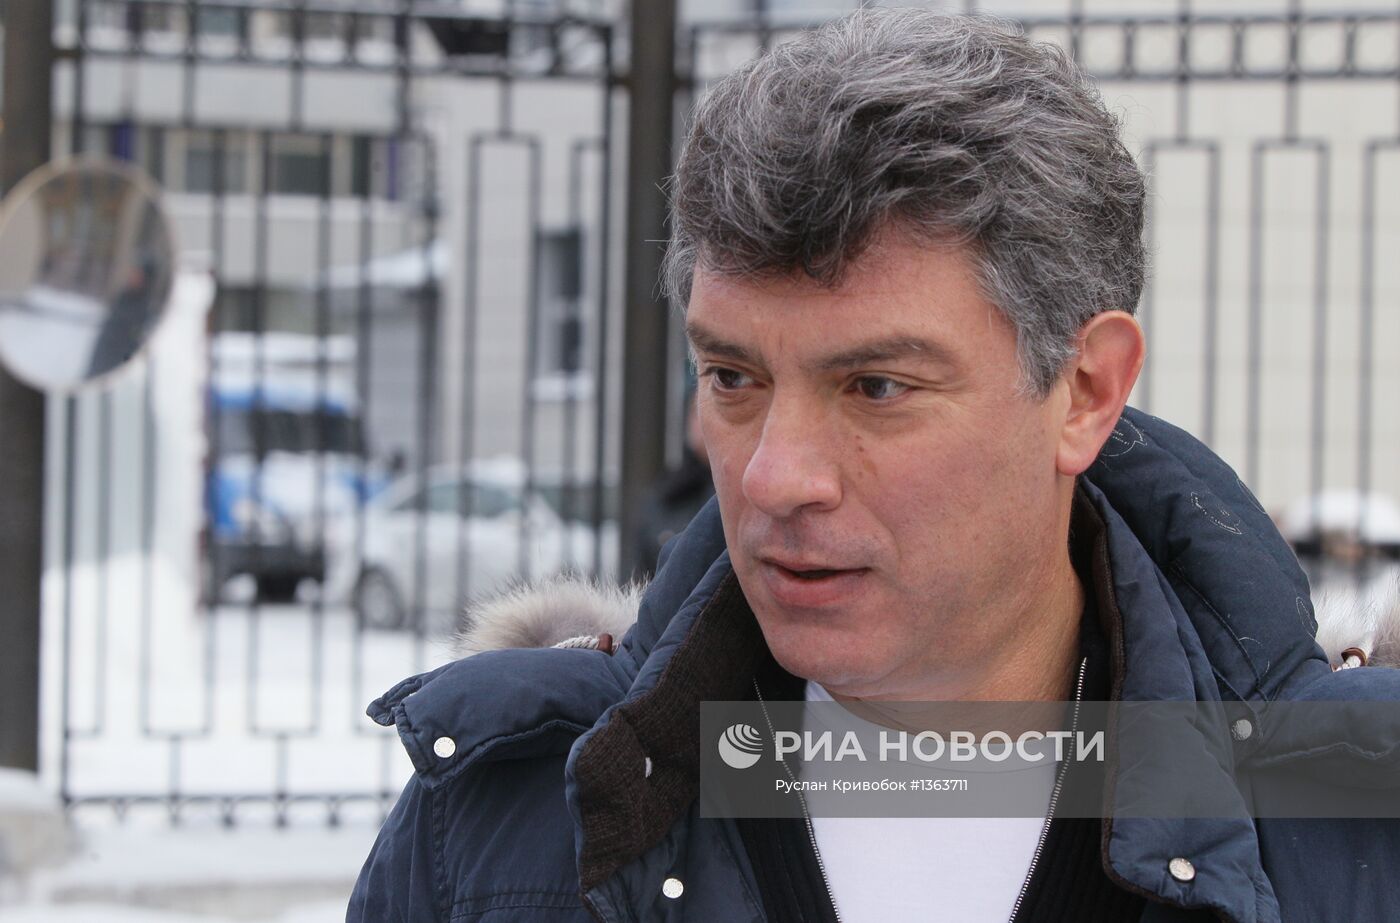 Борис Немцов вызван на допрос в Следственный комитет